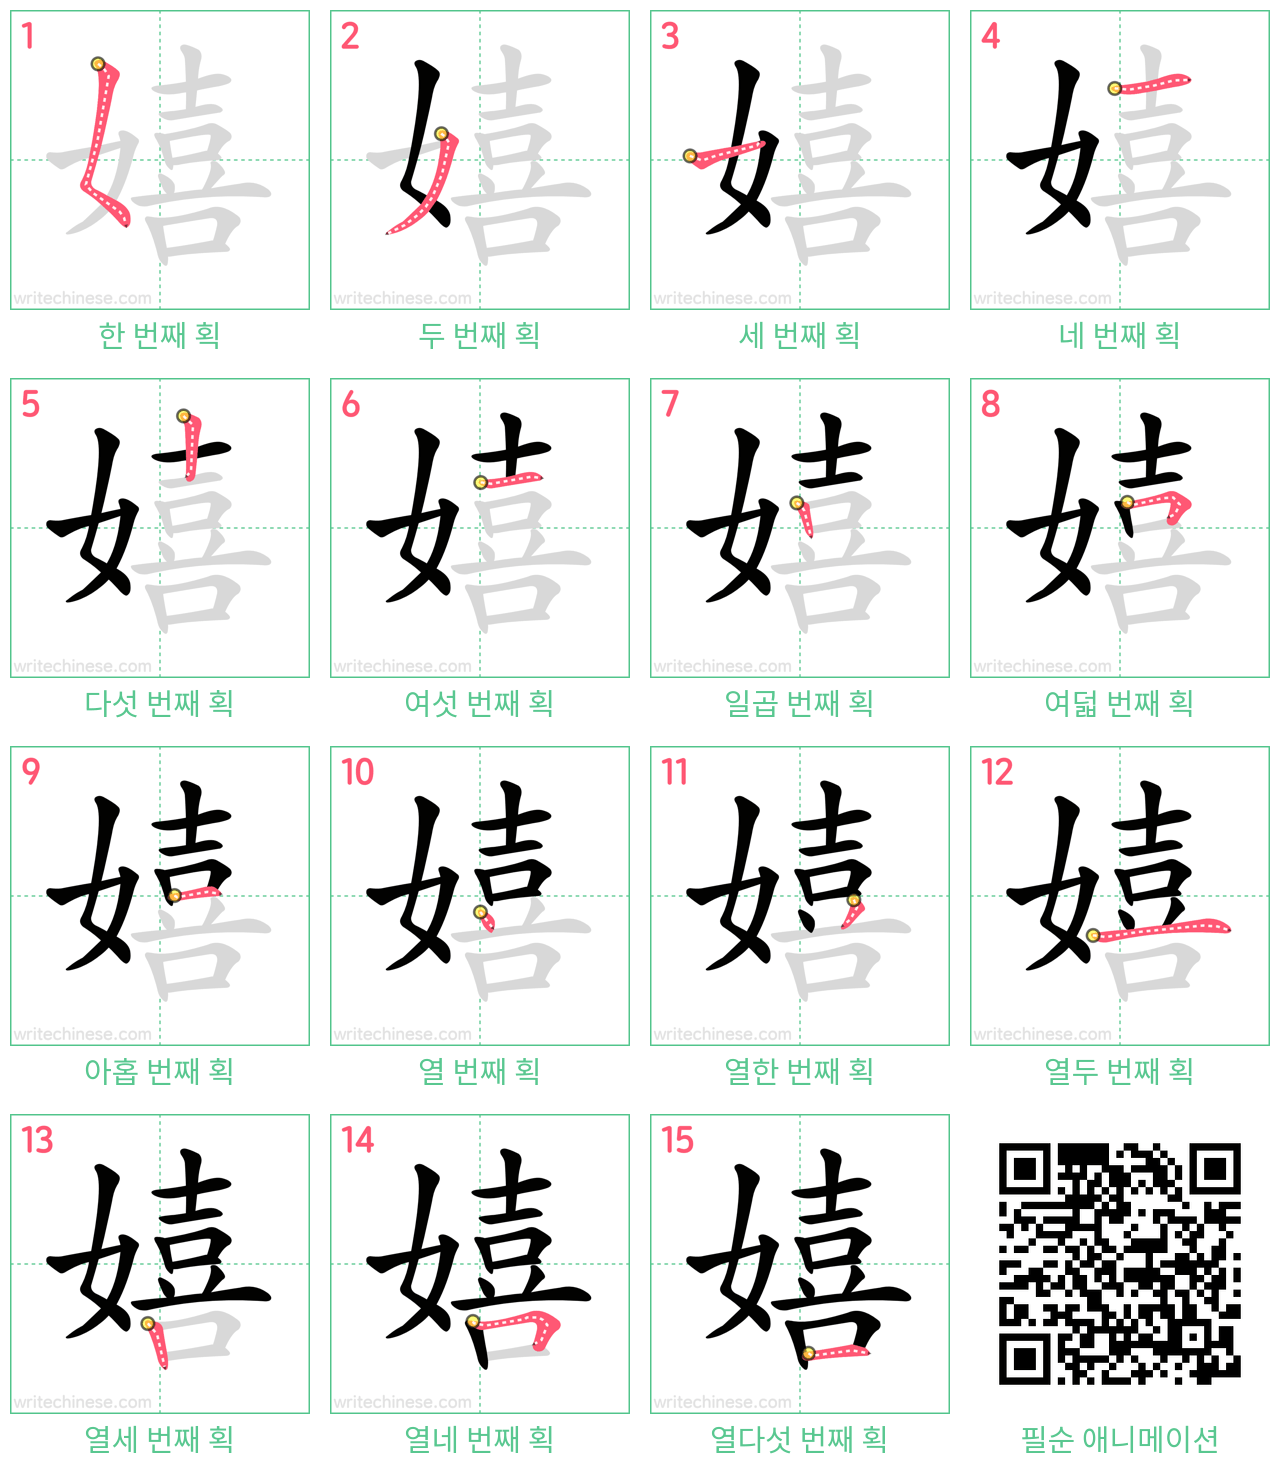 嬉 step-by-step stroke order diagrams